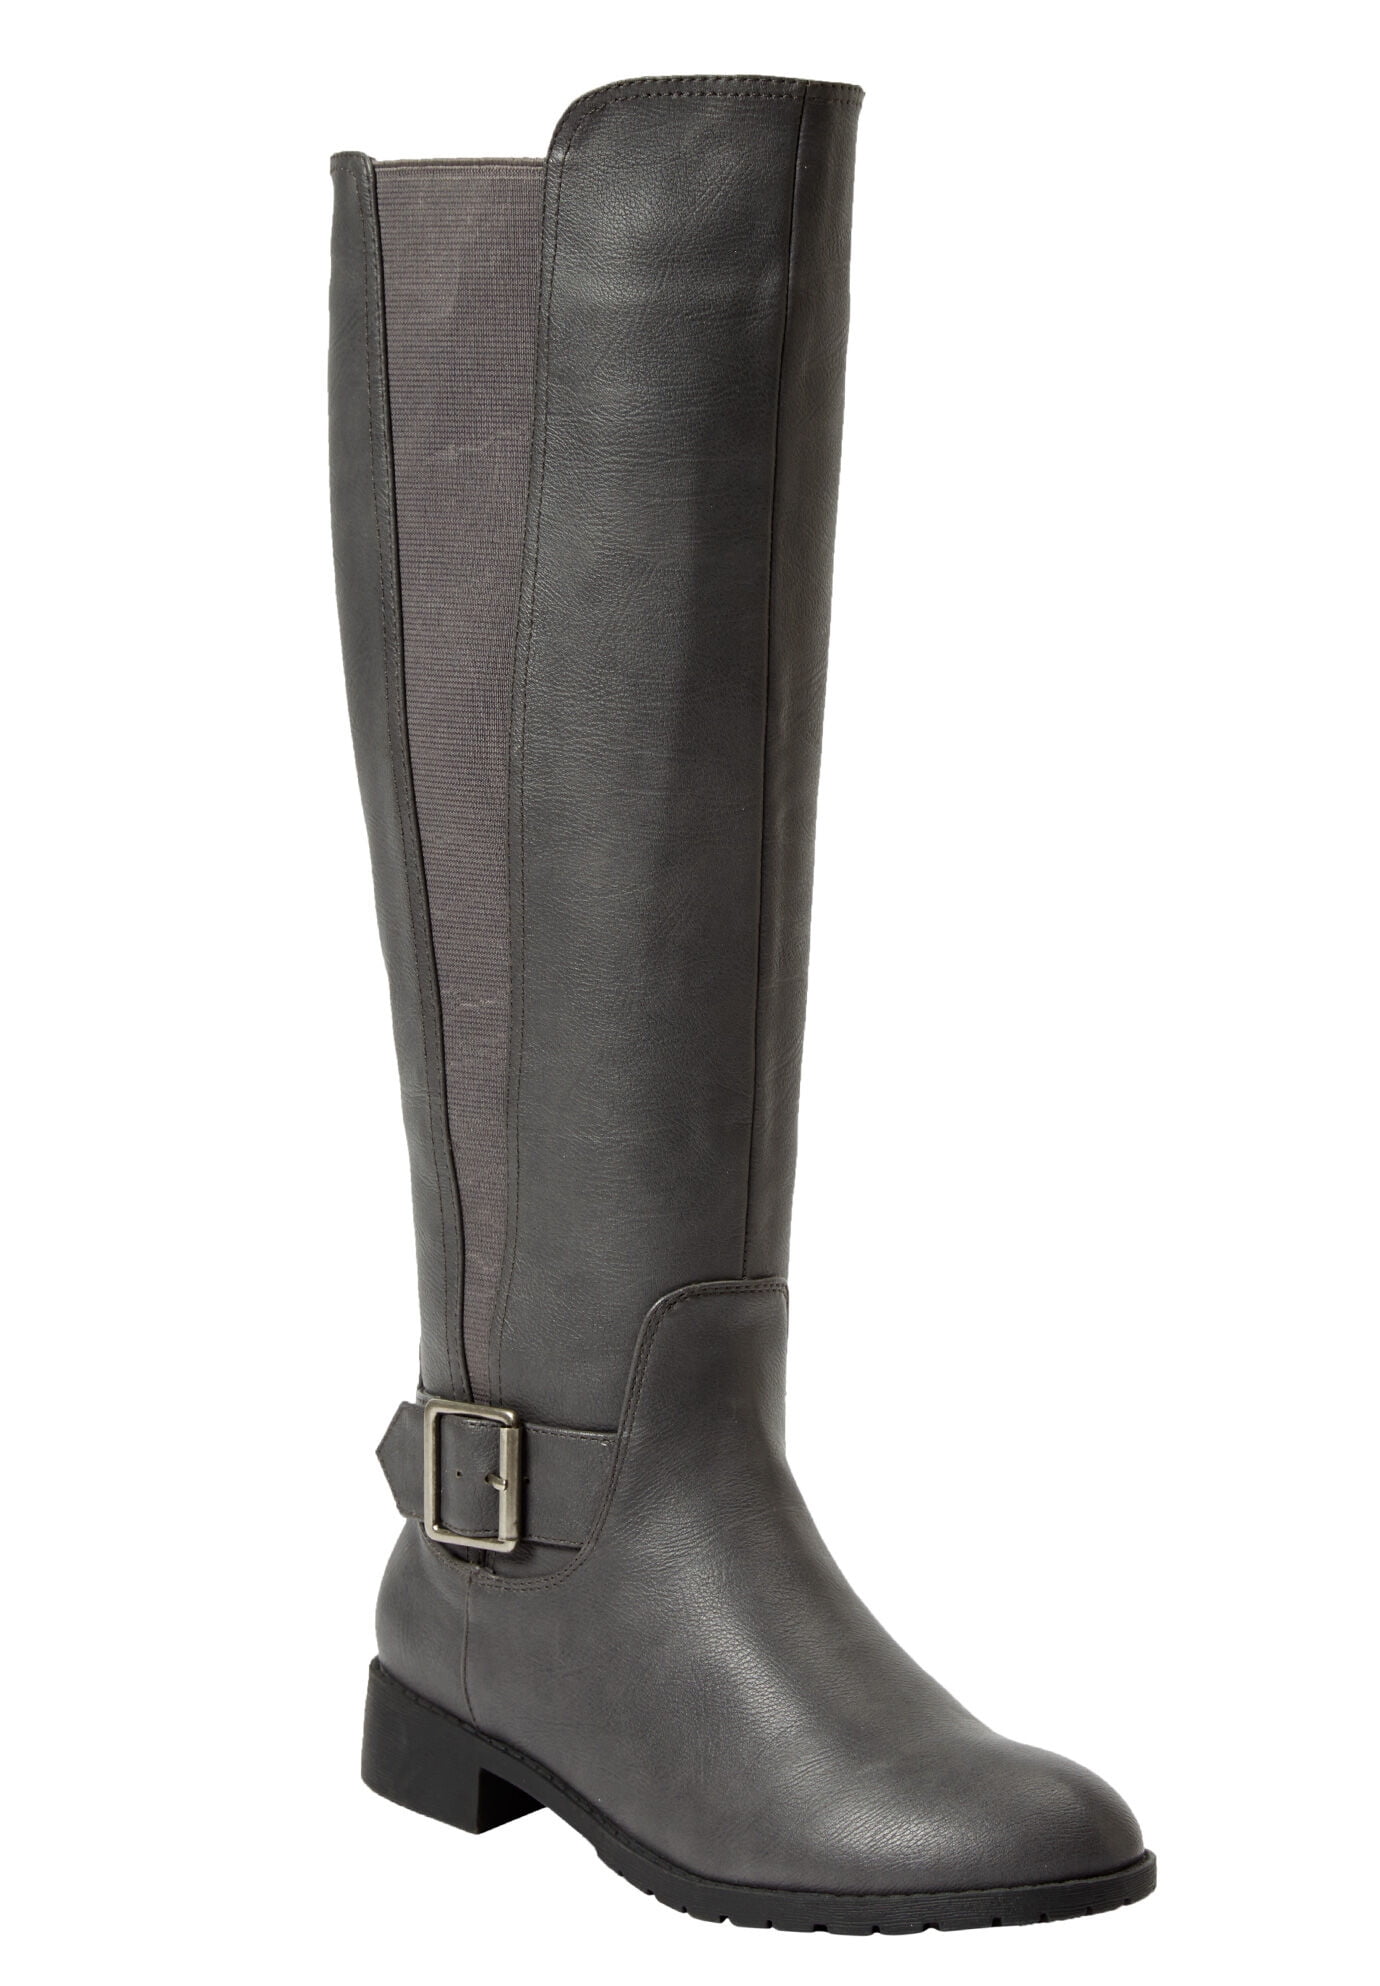 Vince Camuto Freikti Women's Boots Pale Grey Size 11 M - Walmart.com